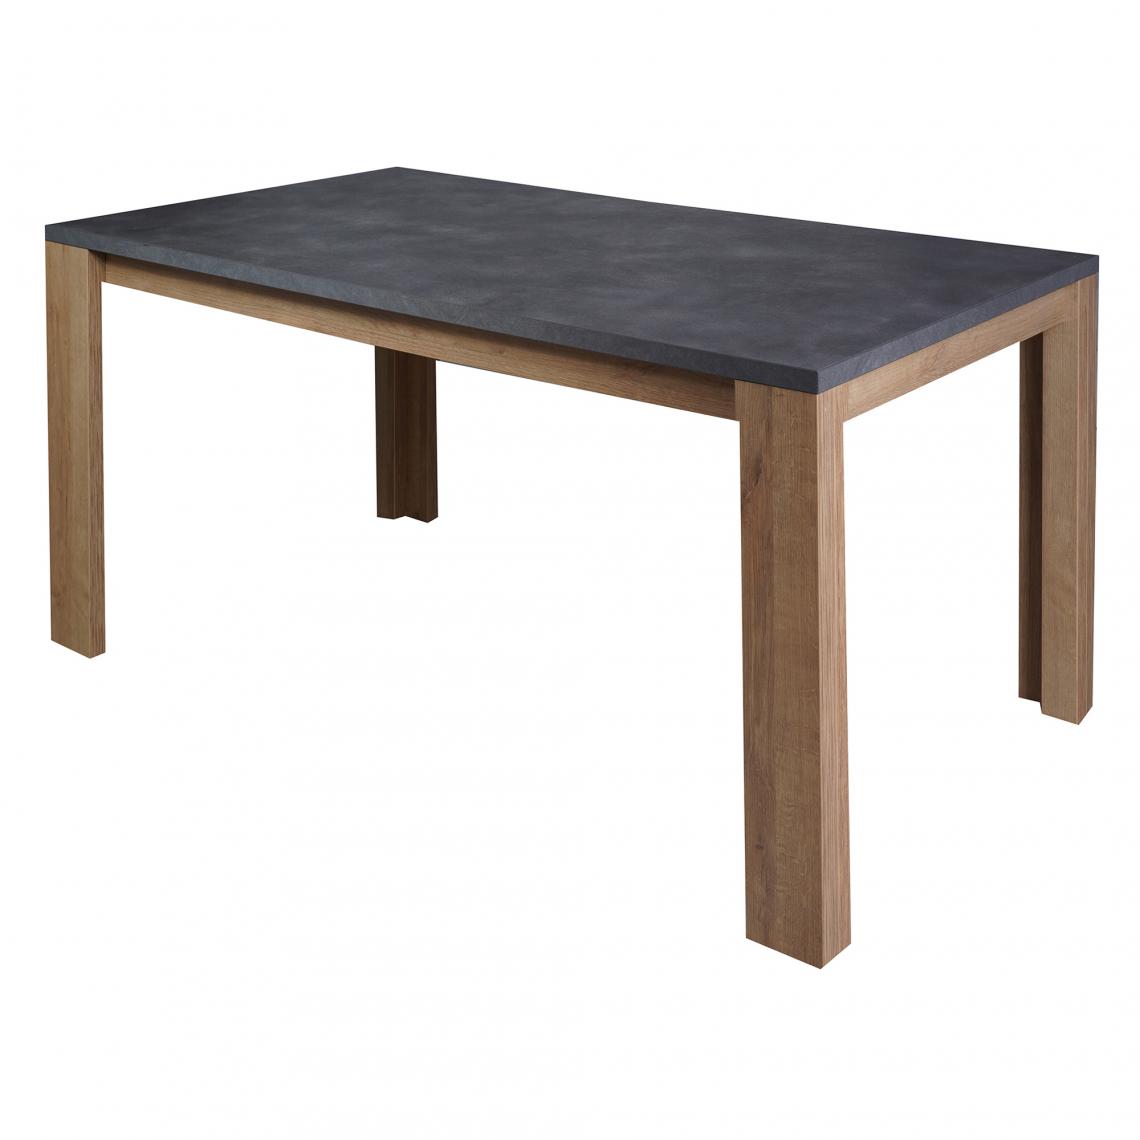 Alter - Table fixe en stratifié, couleur marron et anthracite, 160 x 76,5 x 90 cm. - Tables à manger